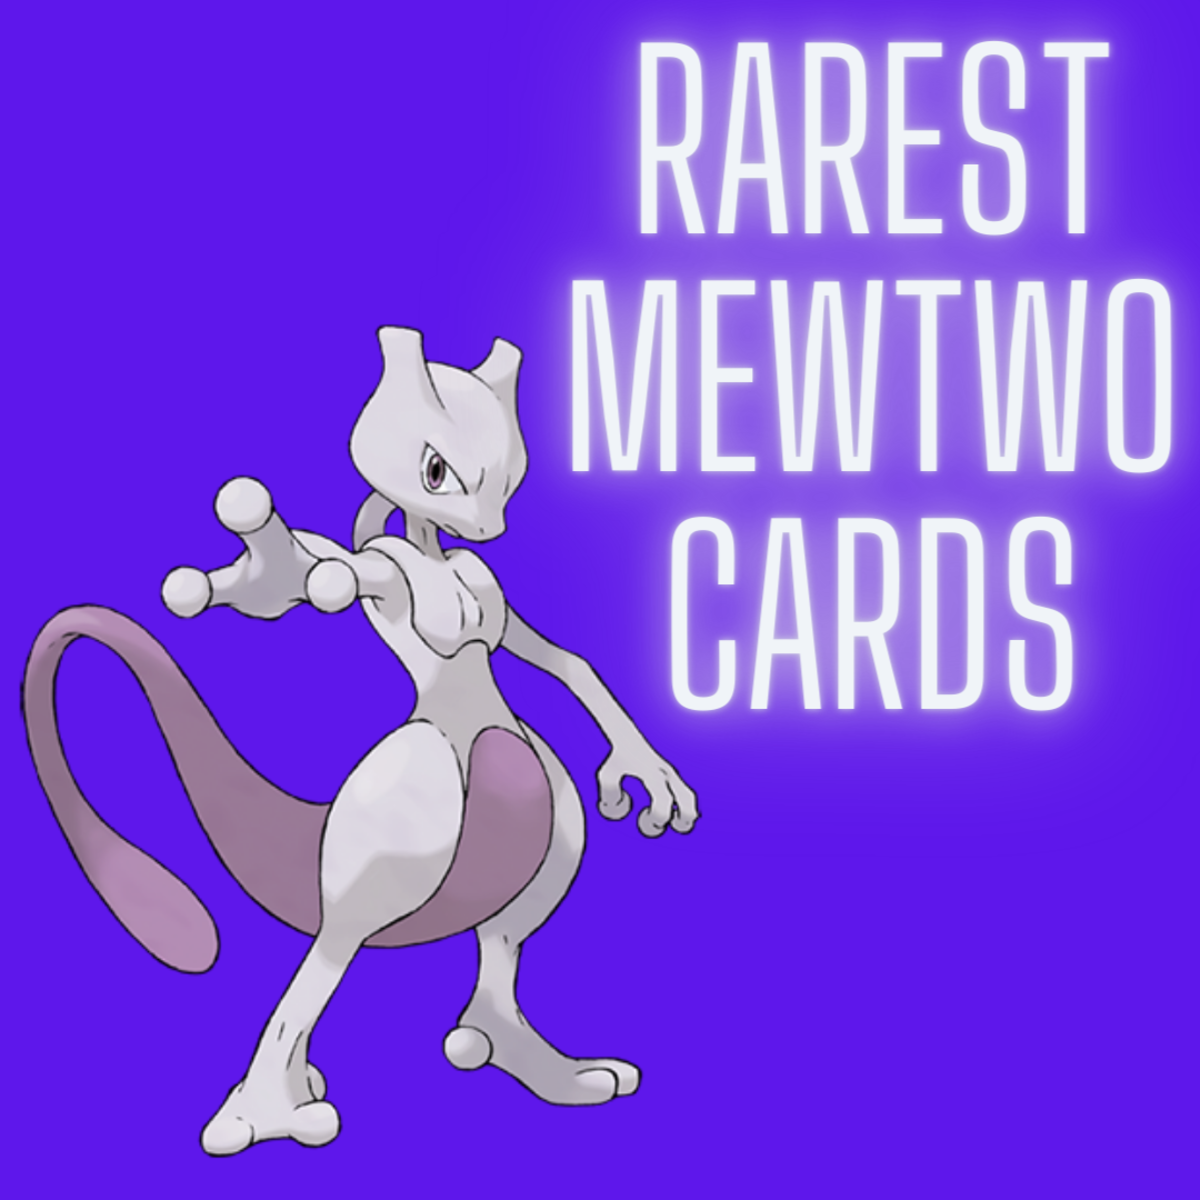 Mewtwo Pokemon Trading Card Game (TCG)